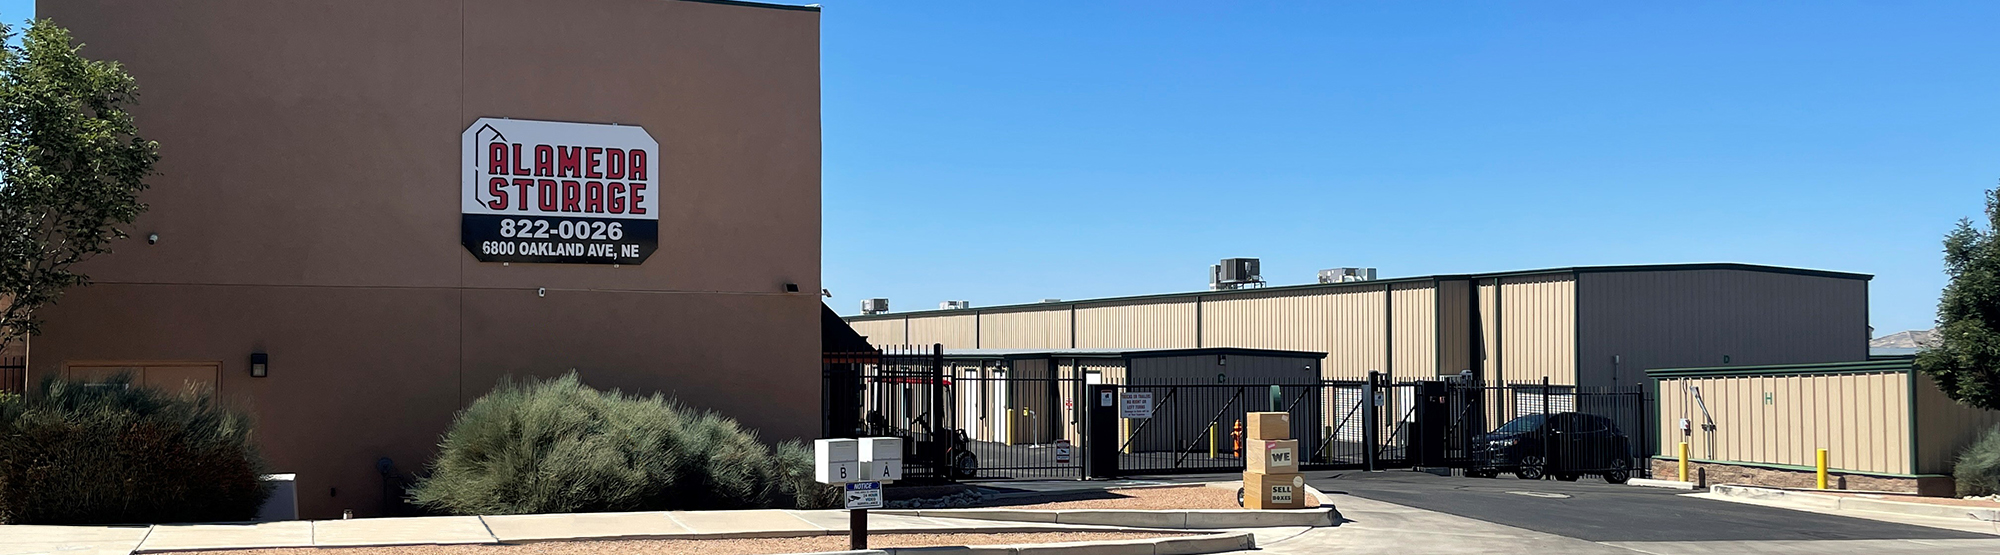 Alameda Storage in Albuquerque, NM